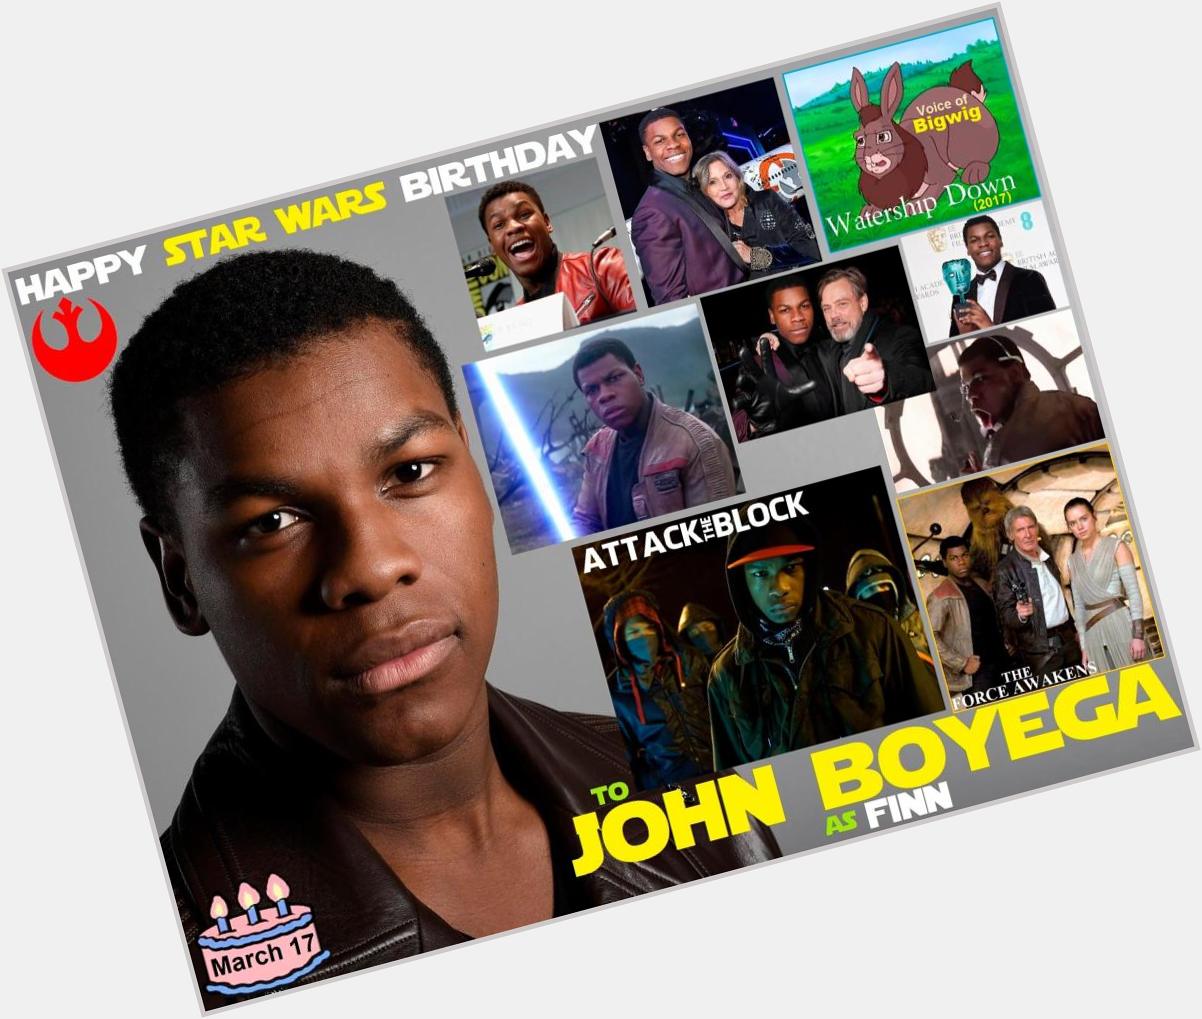 Happy birthday John Boyega, born March 17, 1992.  